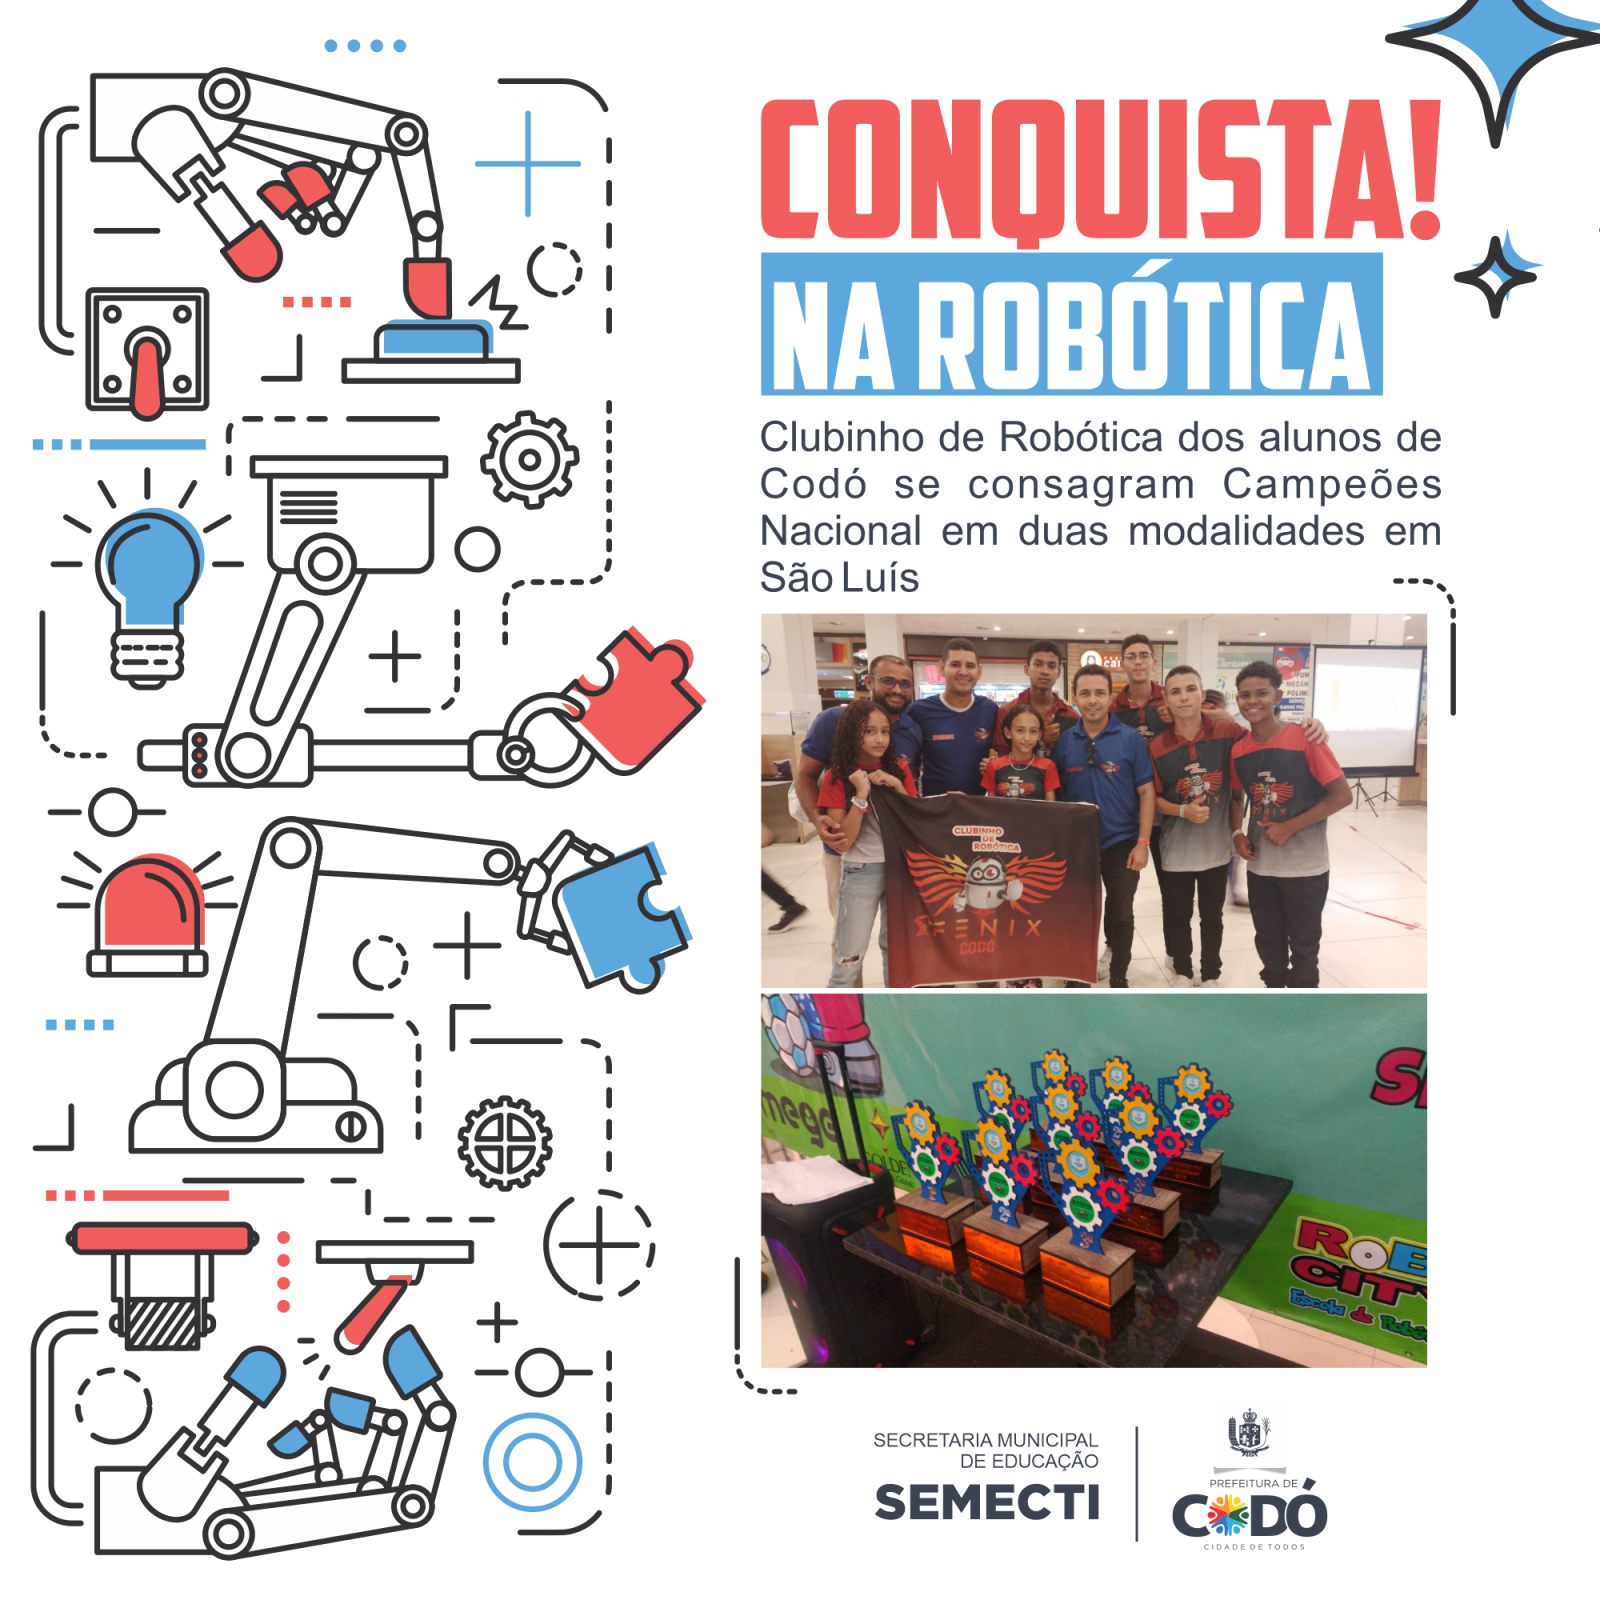 CONQUISTA! Clubinho de Robótica dos alunos de Codó se consagra Campeão Nacional em duas modalidades em São Luís